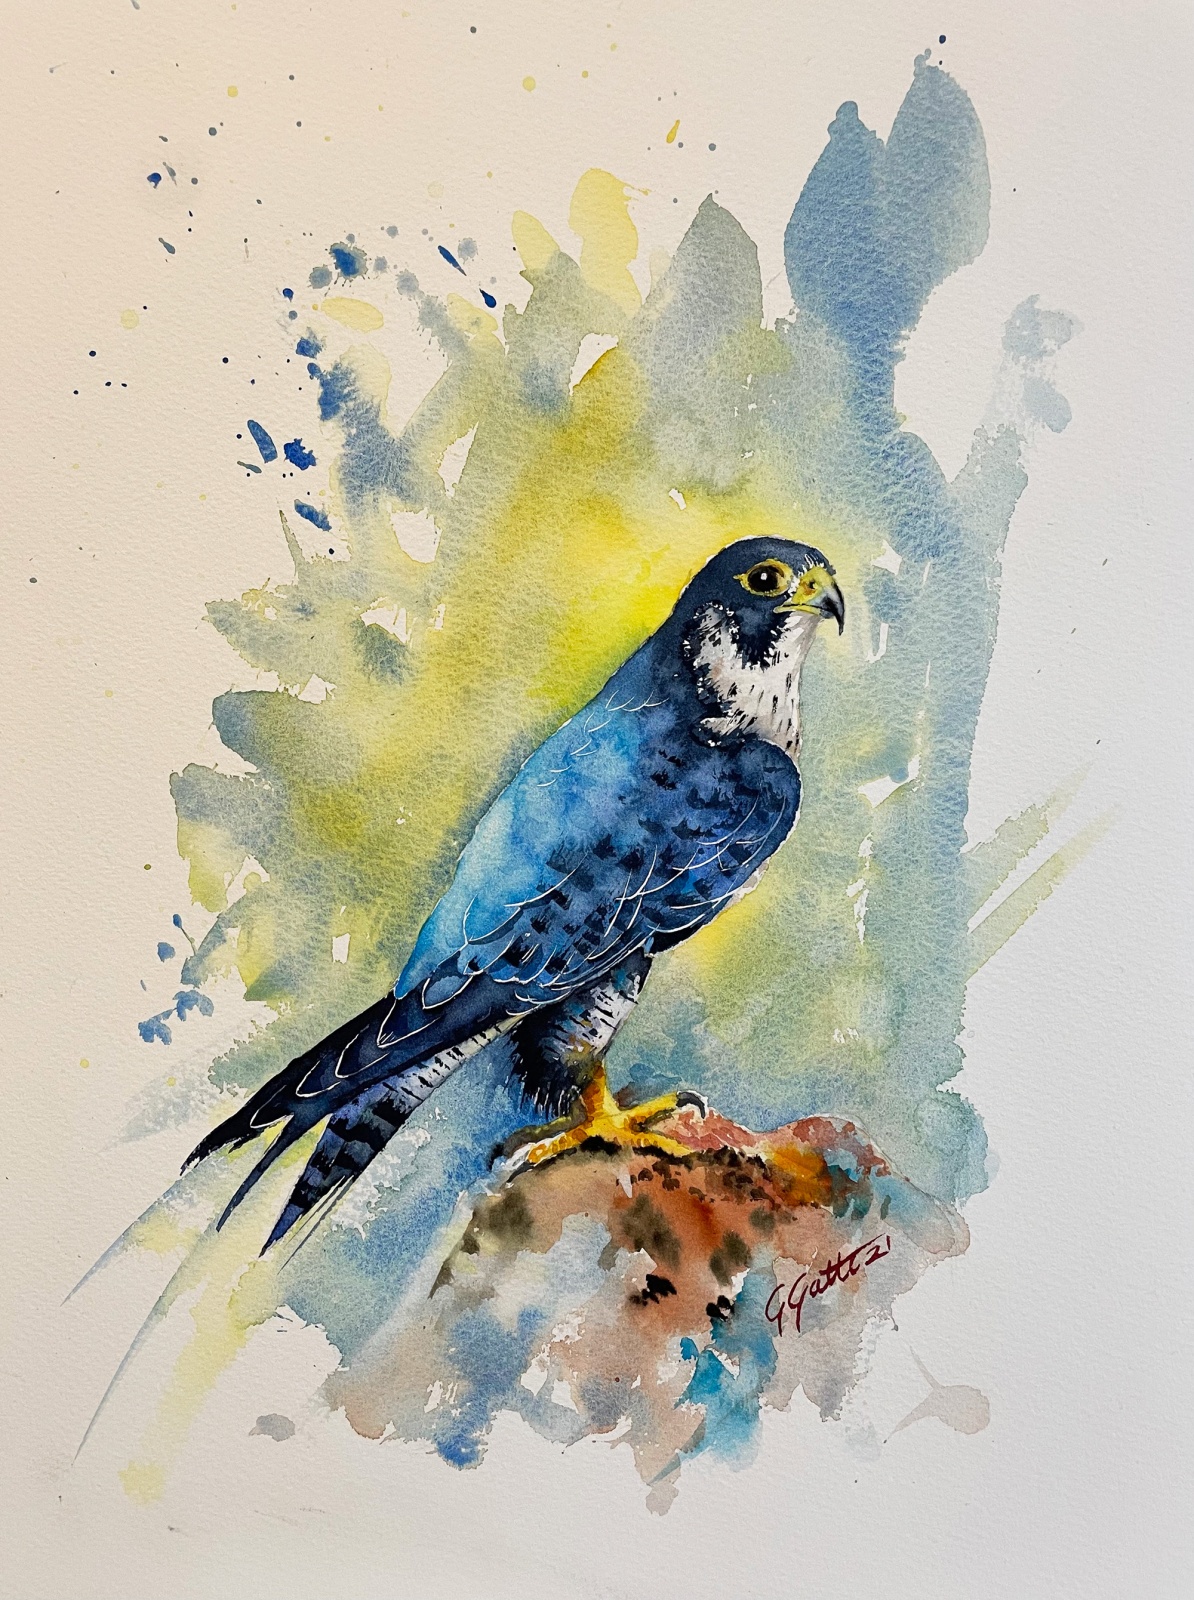 Peregrine Falcon - Flaco pellegrino  - watercolour on paper
41x31 cm